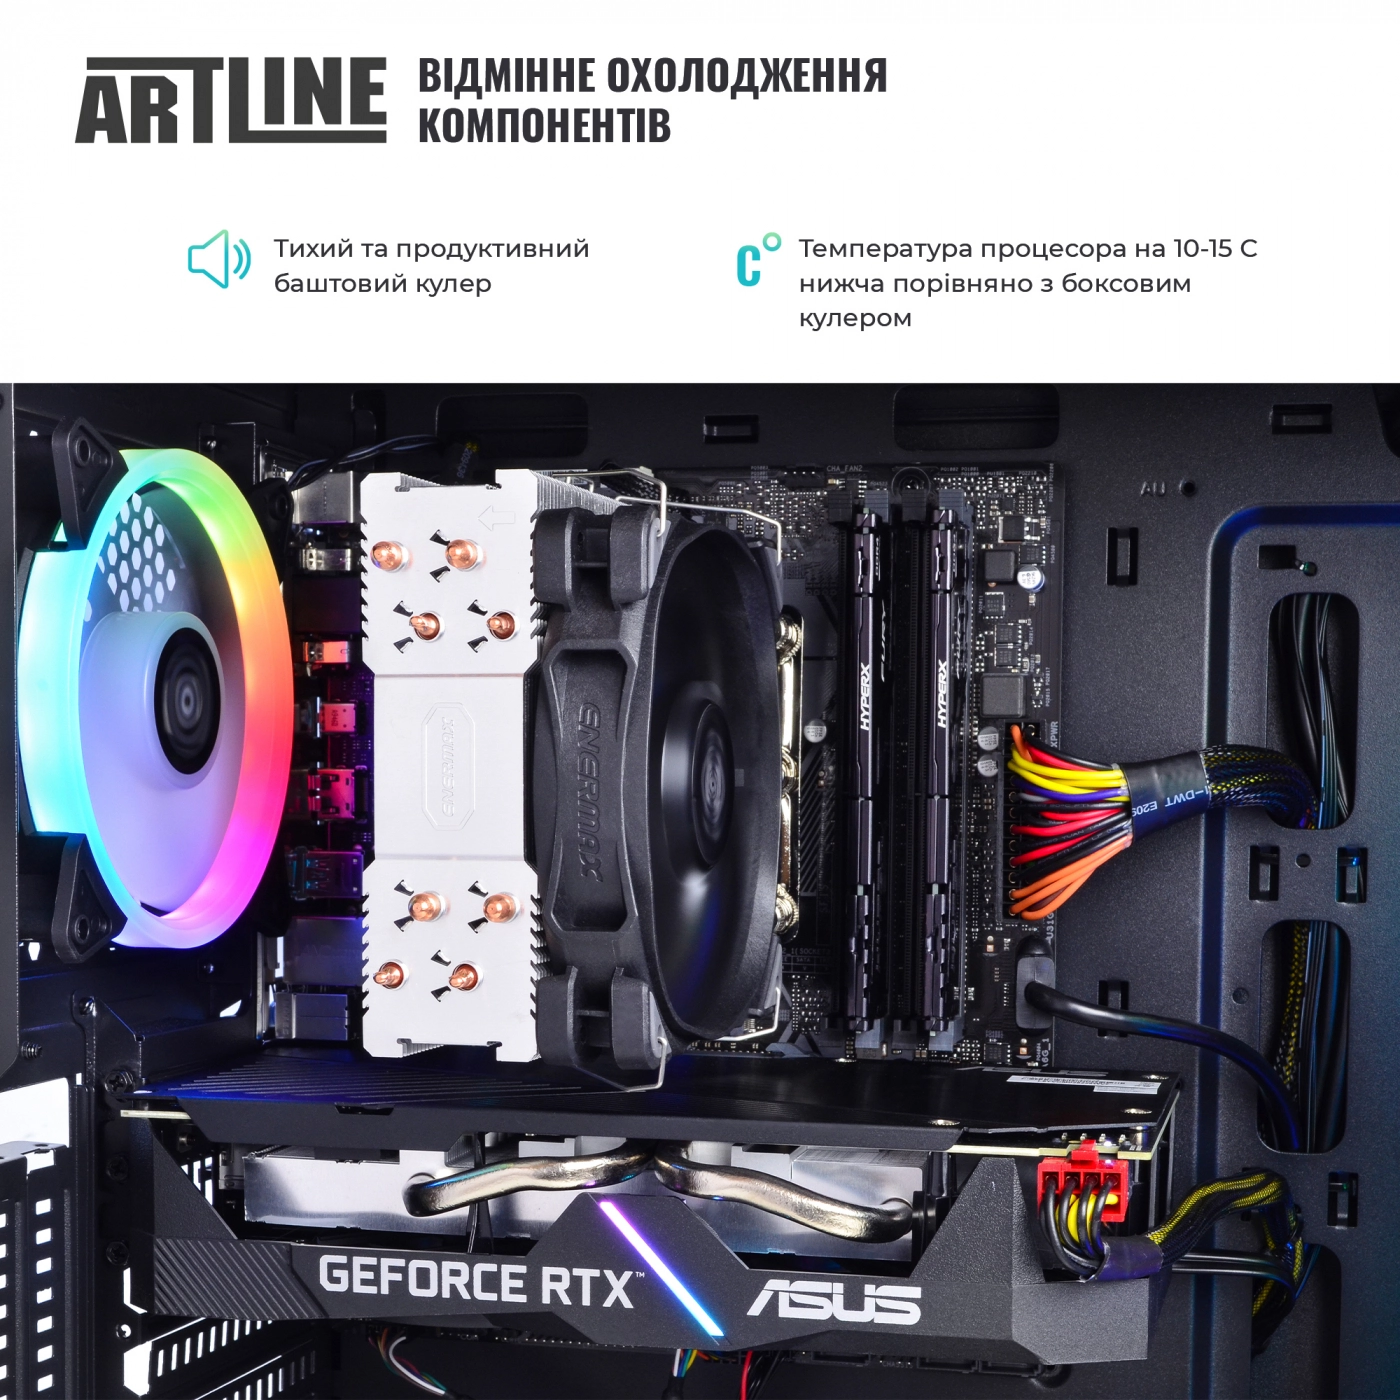 Купить Компьютер ARTLINE Gaming X90v01 - фото 3